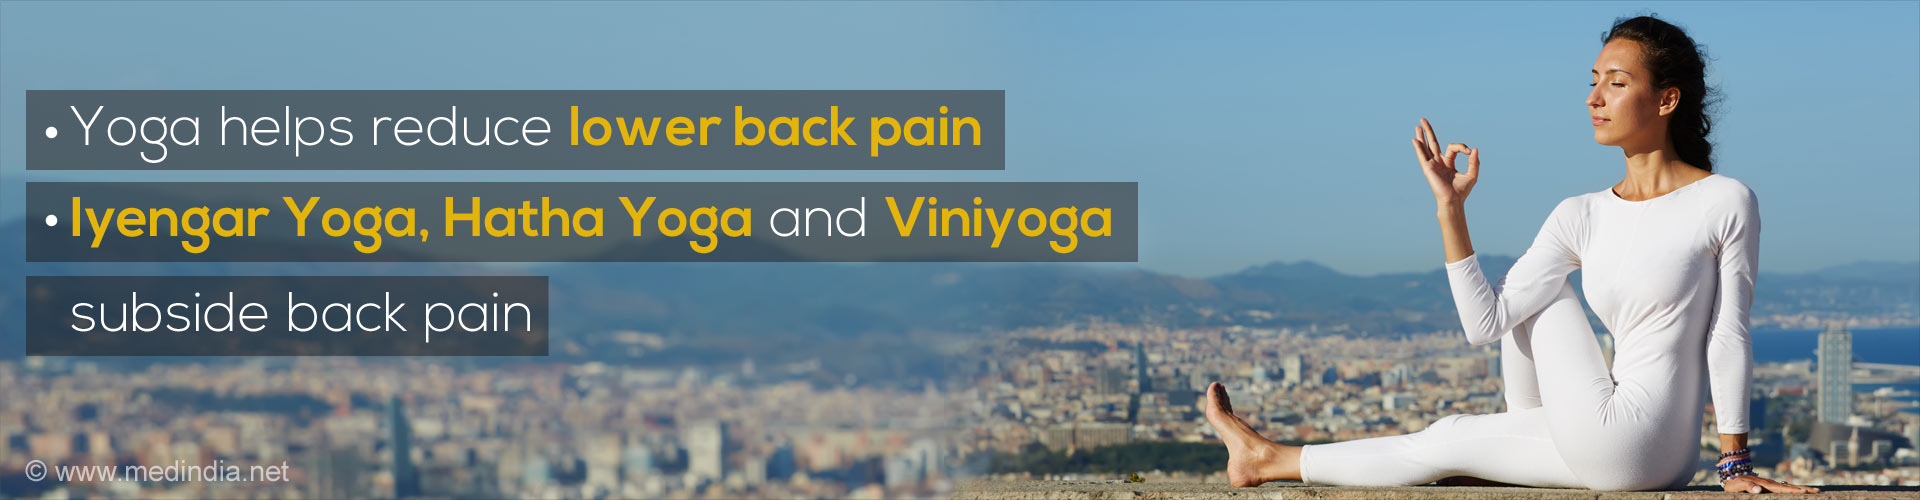 - Yoga helps reduce lower back pain
- Iyengar Yoga, Hatha Yoga and Viniyoga subside back pain